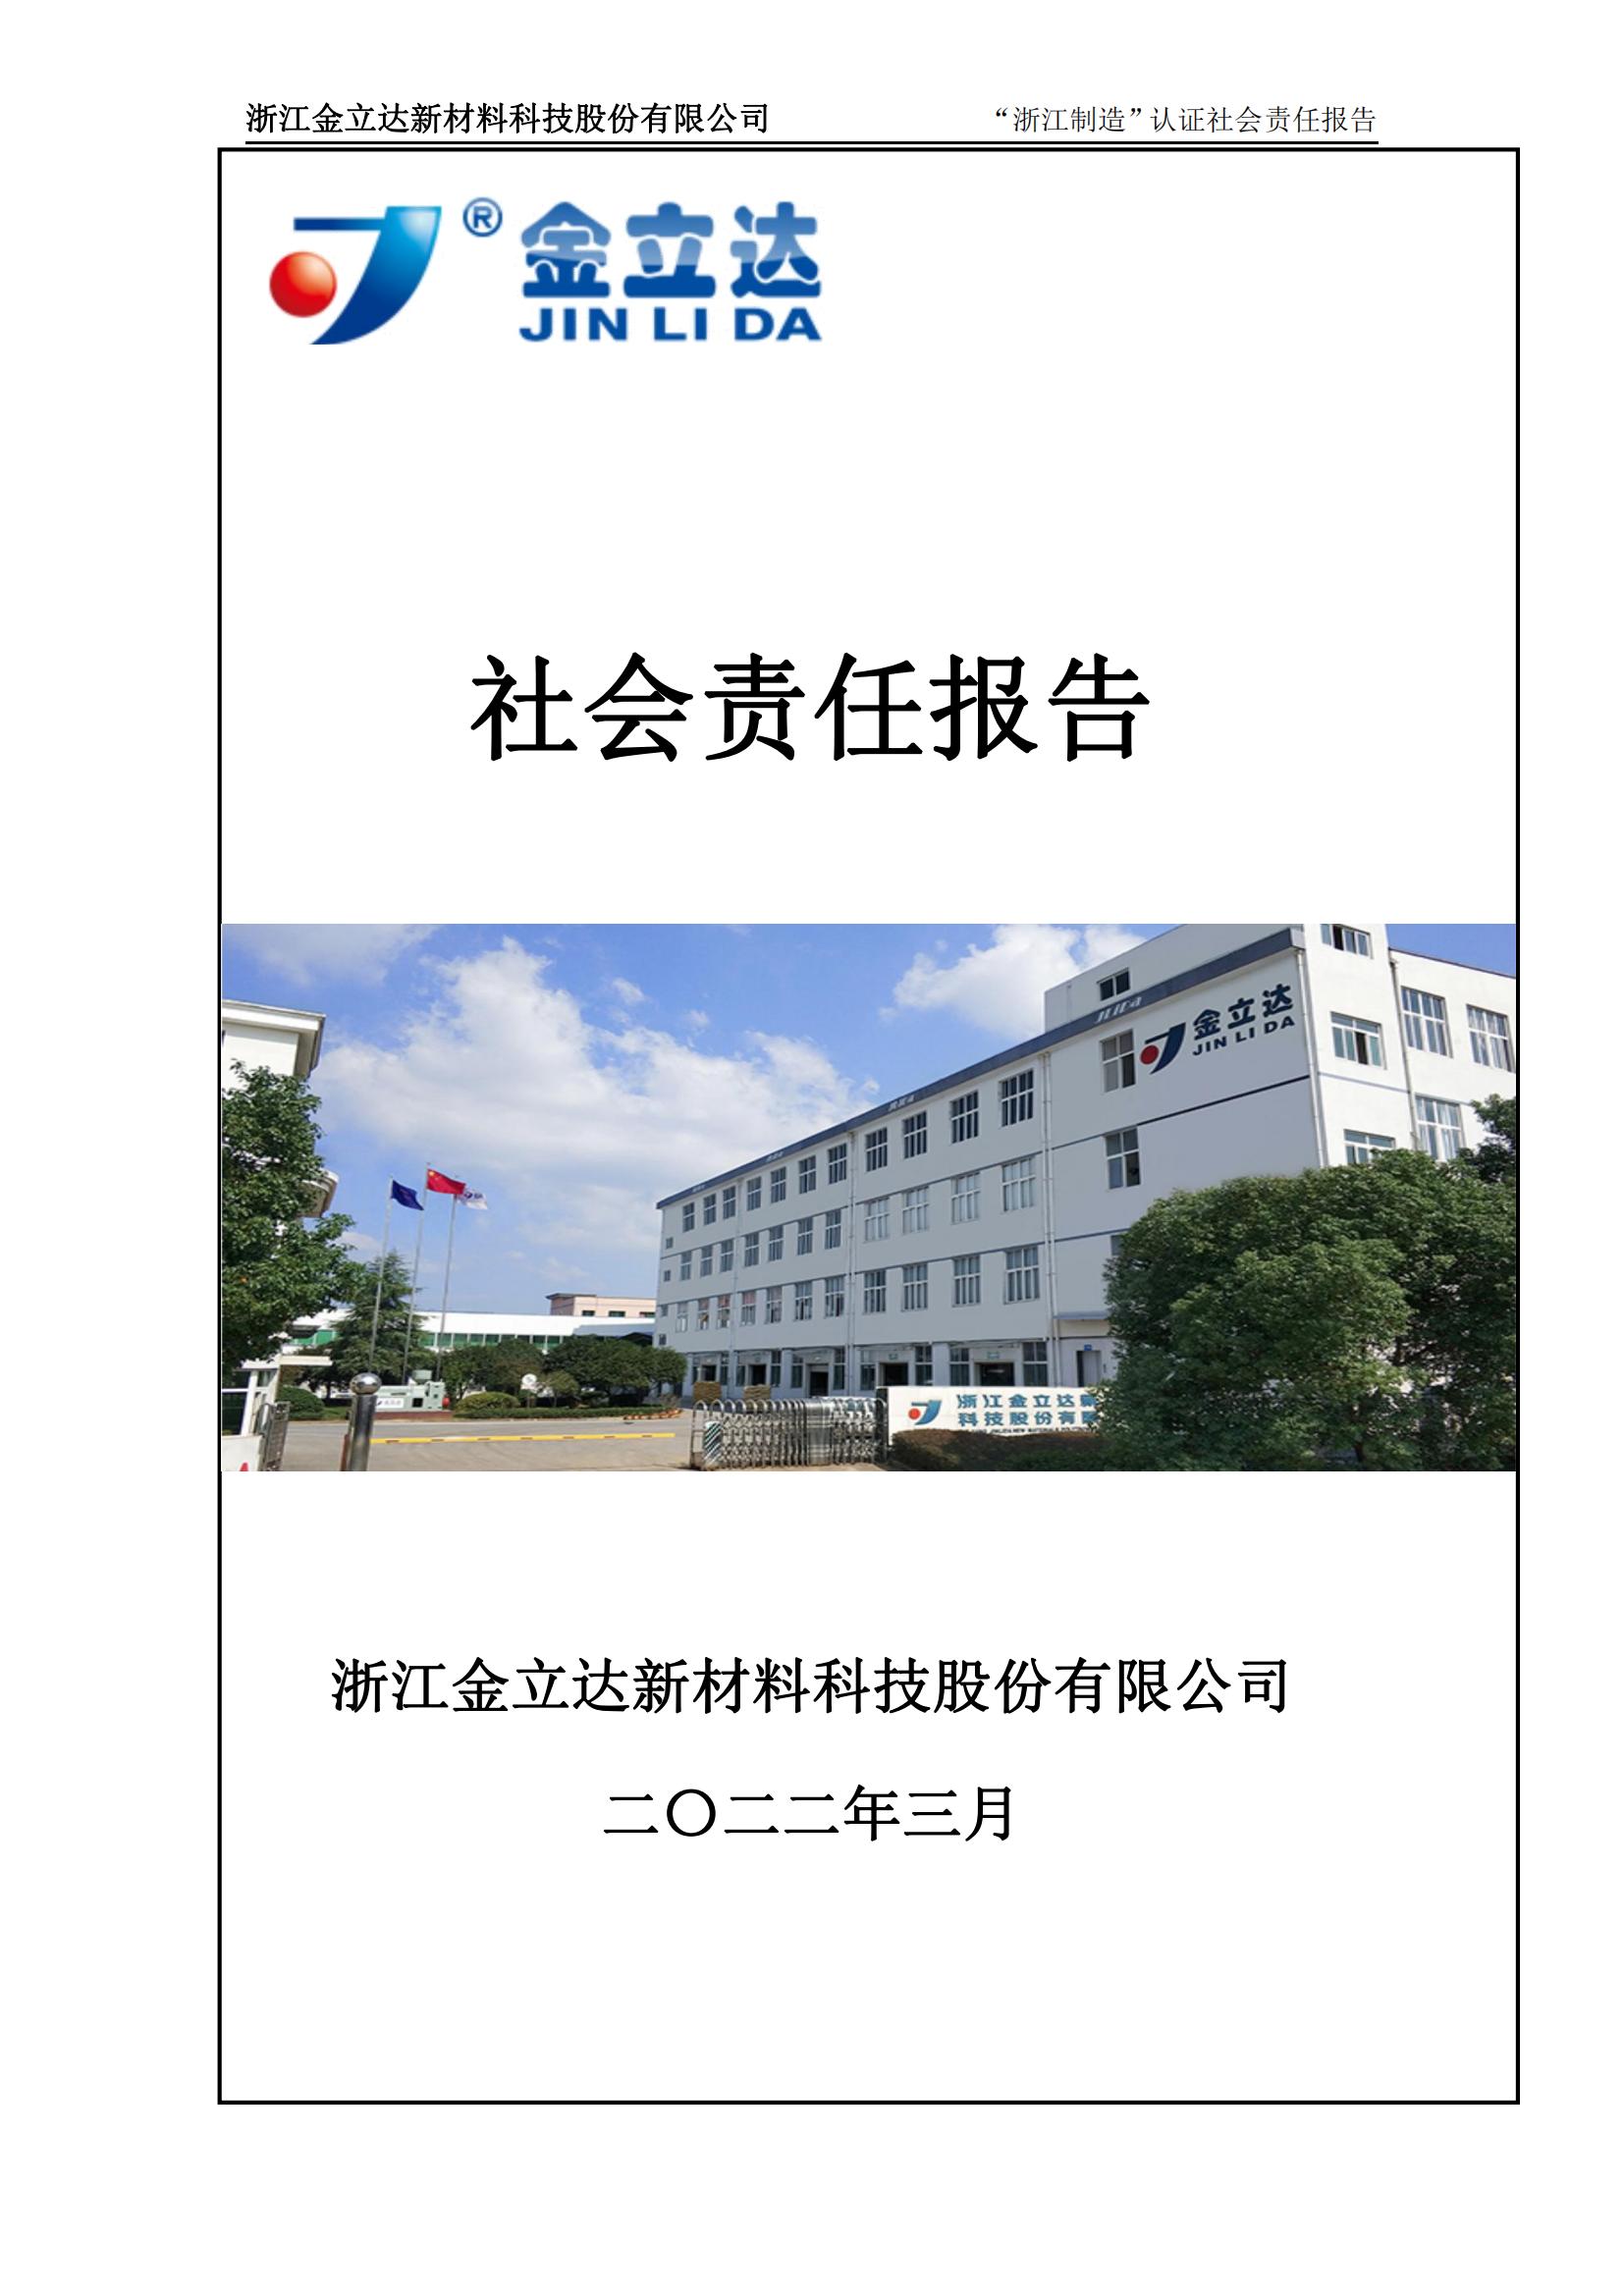 Z6尊龙凯时社会责任报告_00.jpg